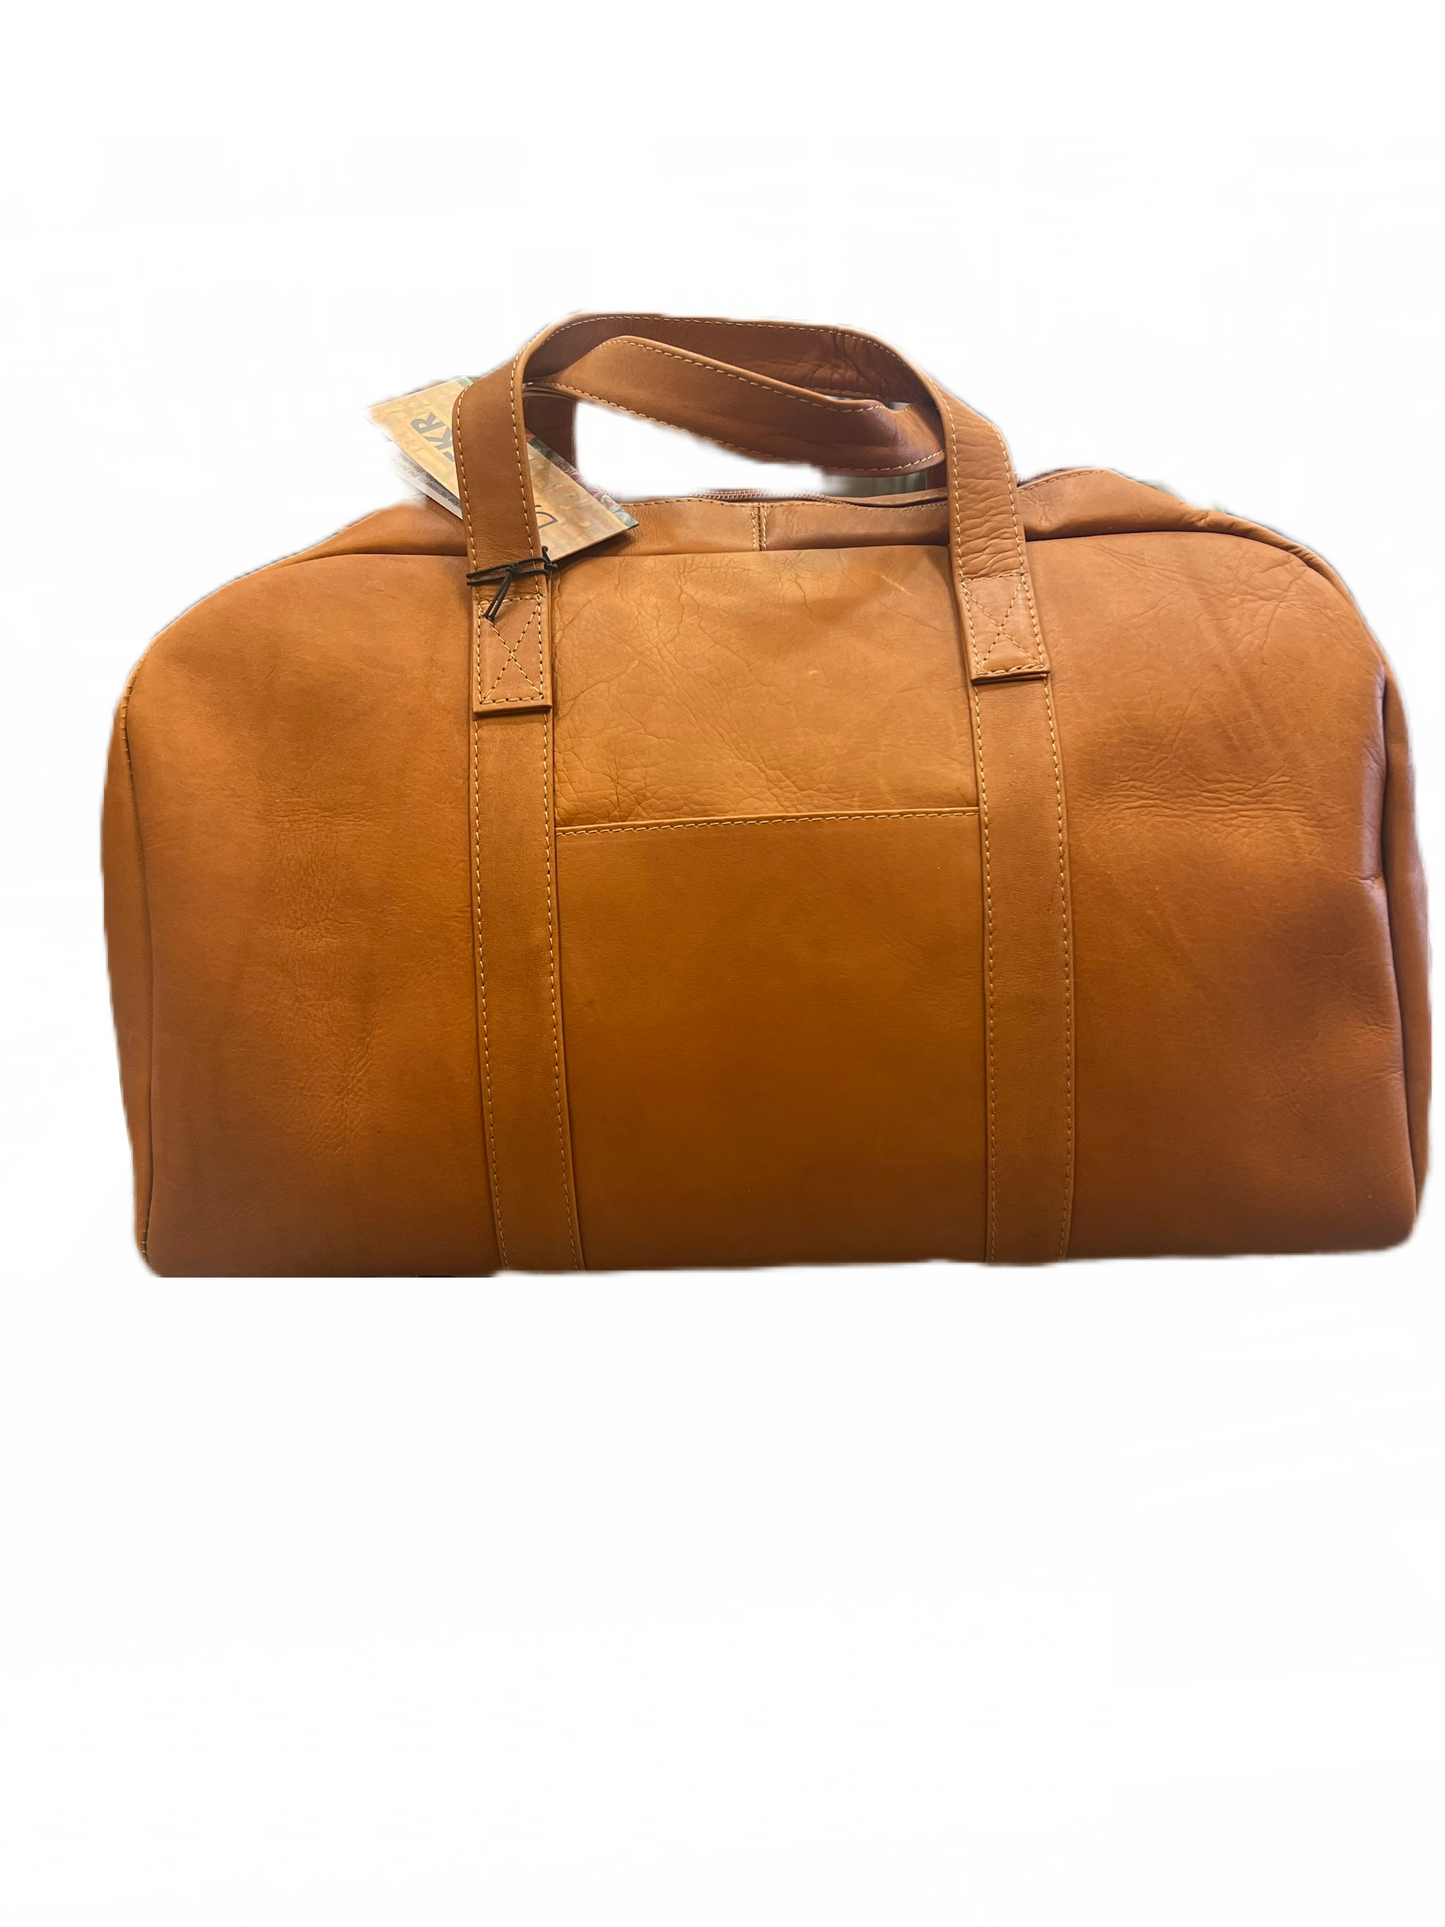 On Sale- DayTrekr Leather Club Bag (SKU 771-1302)